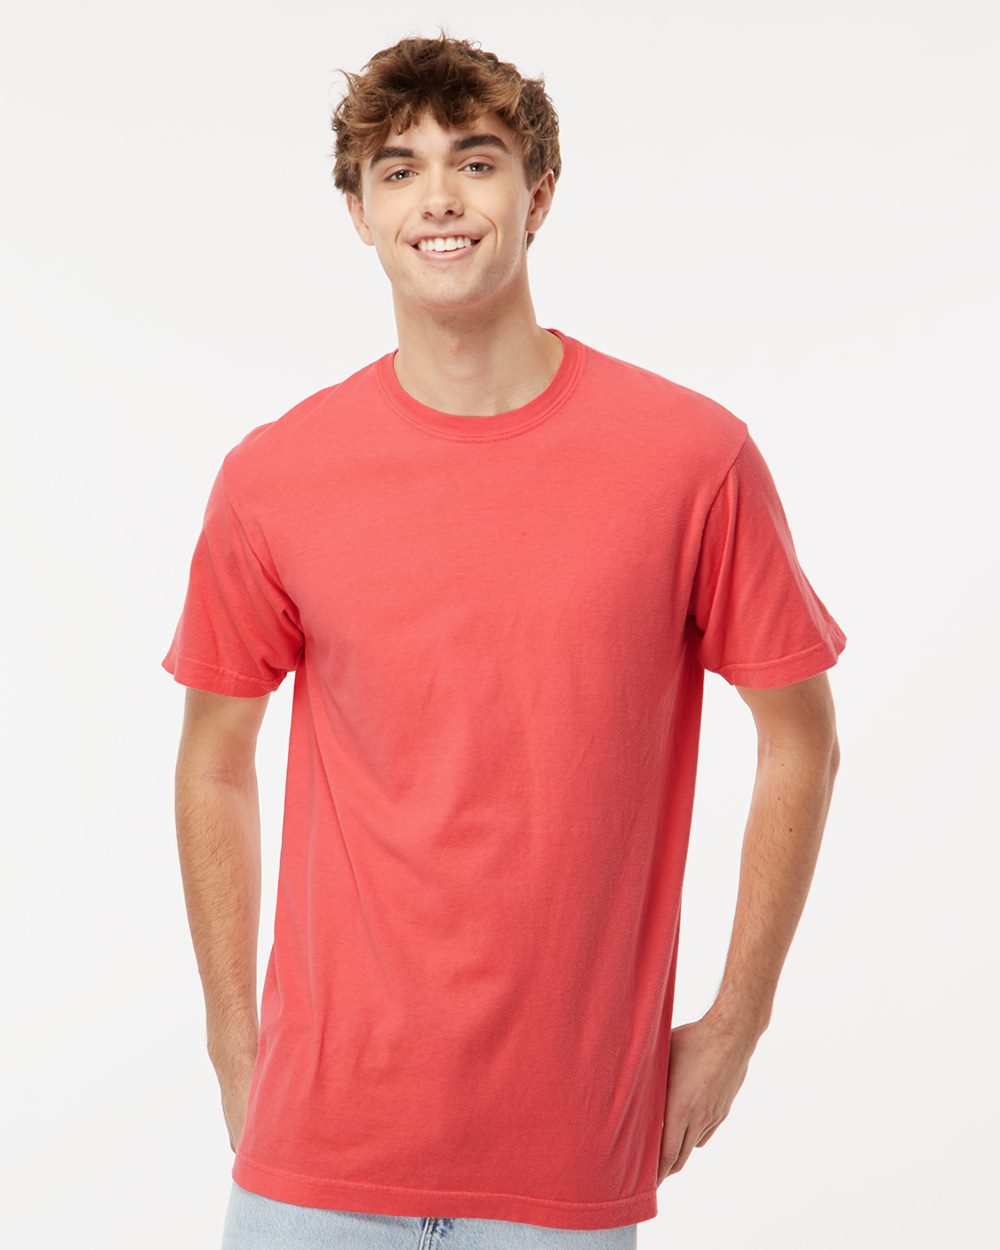 M&O Knits - Tops & T-shirts, Short sleeved T-shirts